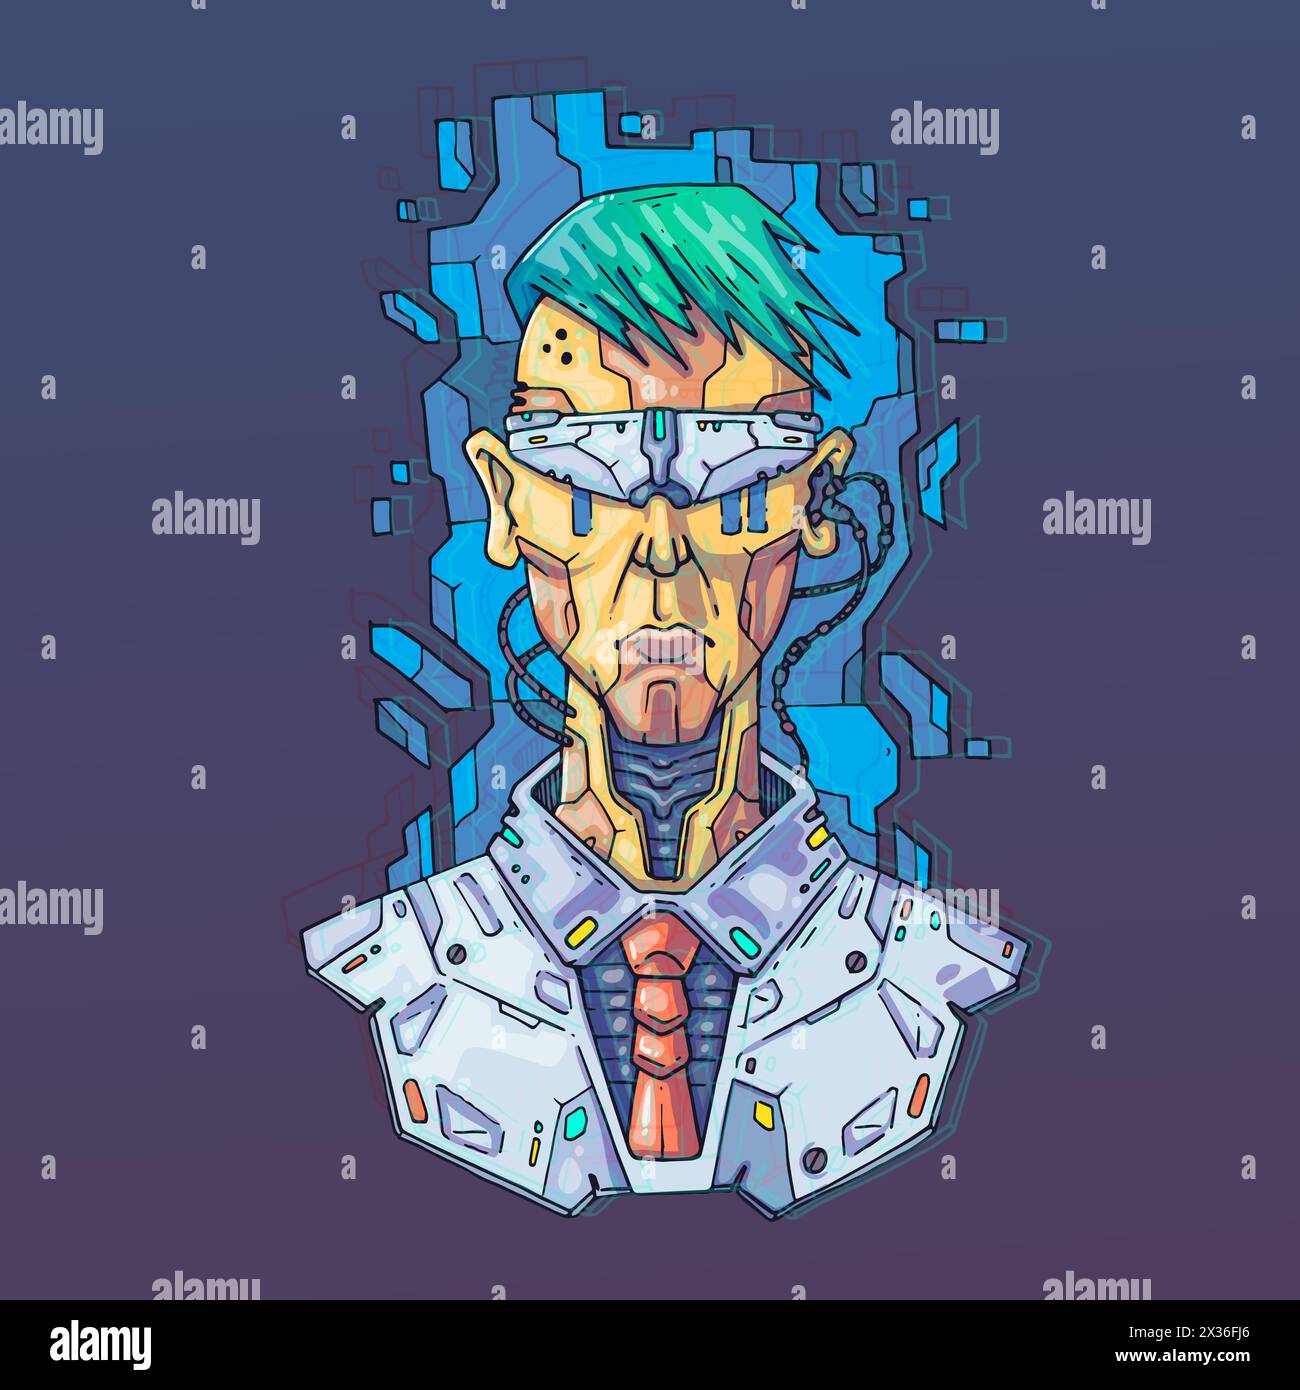 Faccia del personaggio in stile virtuale futuristico. Illustrazione vettoriale Cyber Punk. Cartoni animati per il Web e la stampa. Poster Cyber Art alla moda. Illustrazione Vettoriale